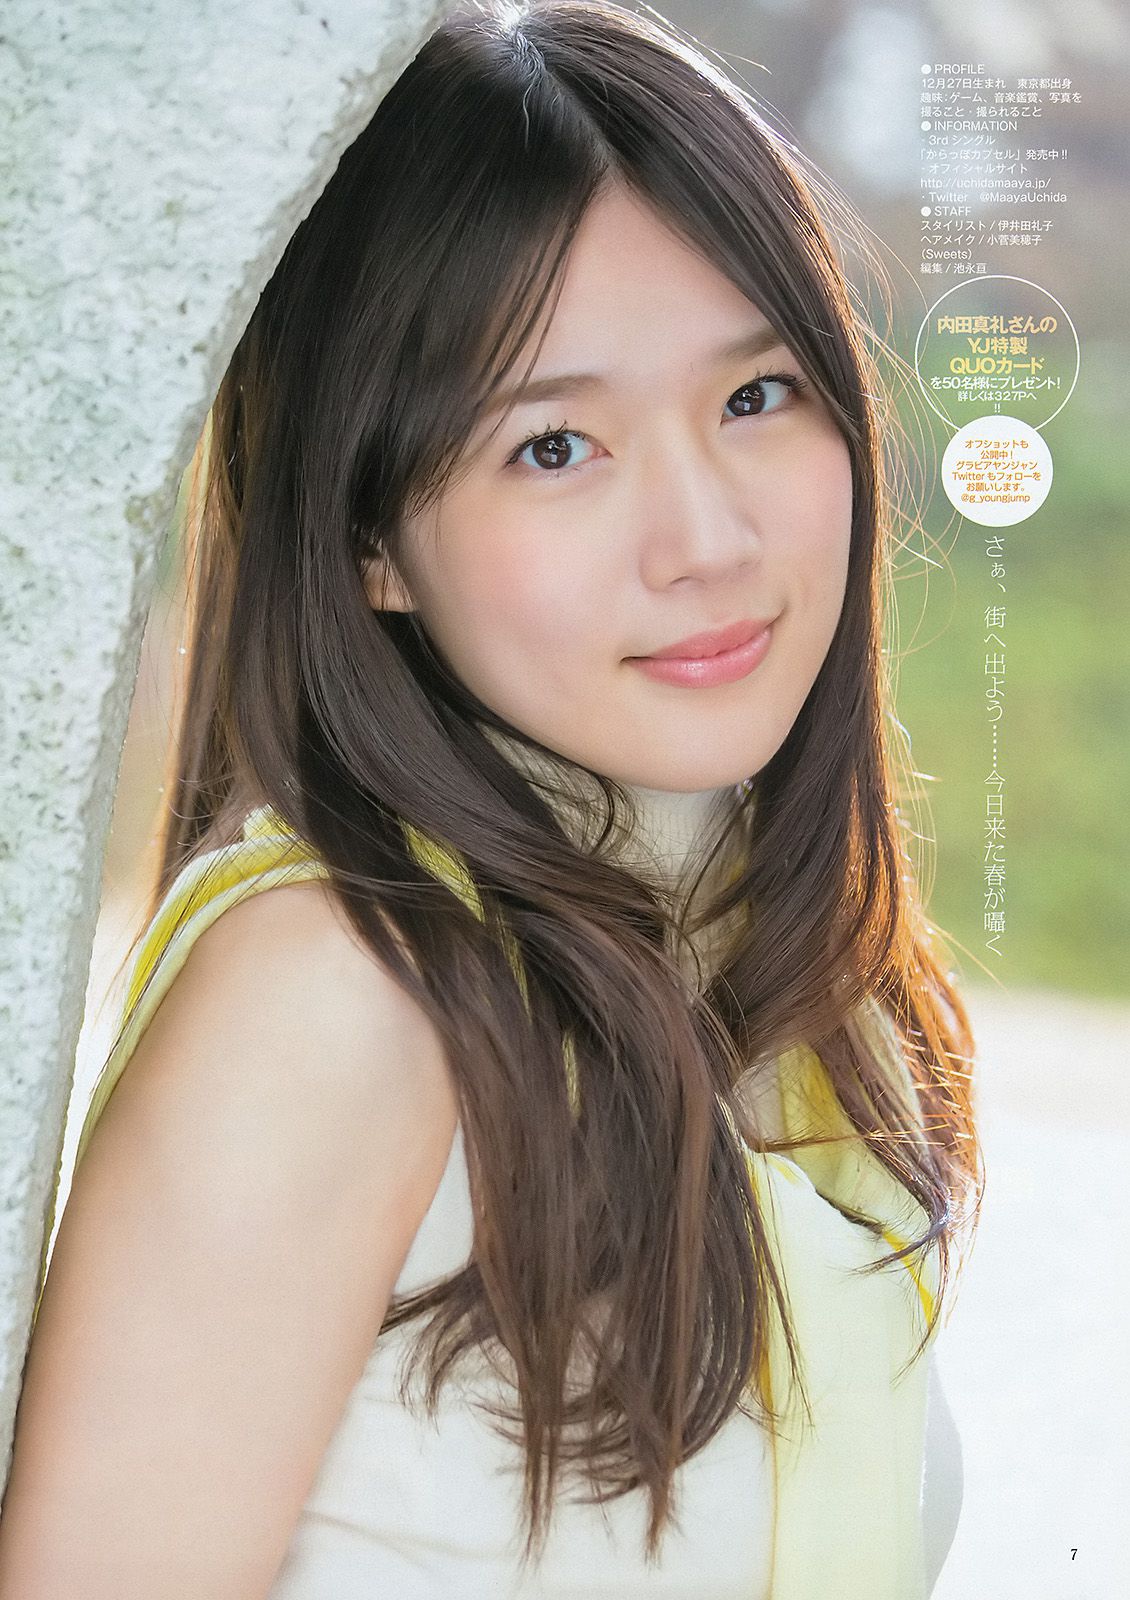 内田真礼 武田玲奈 しらたまくん [Weekly Young Jump] 2015年No.20 写真杂志/(16P)